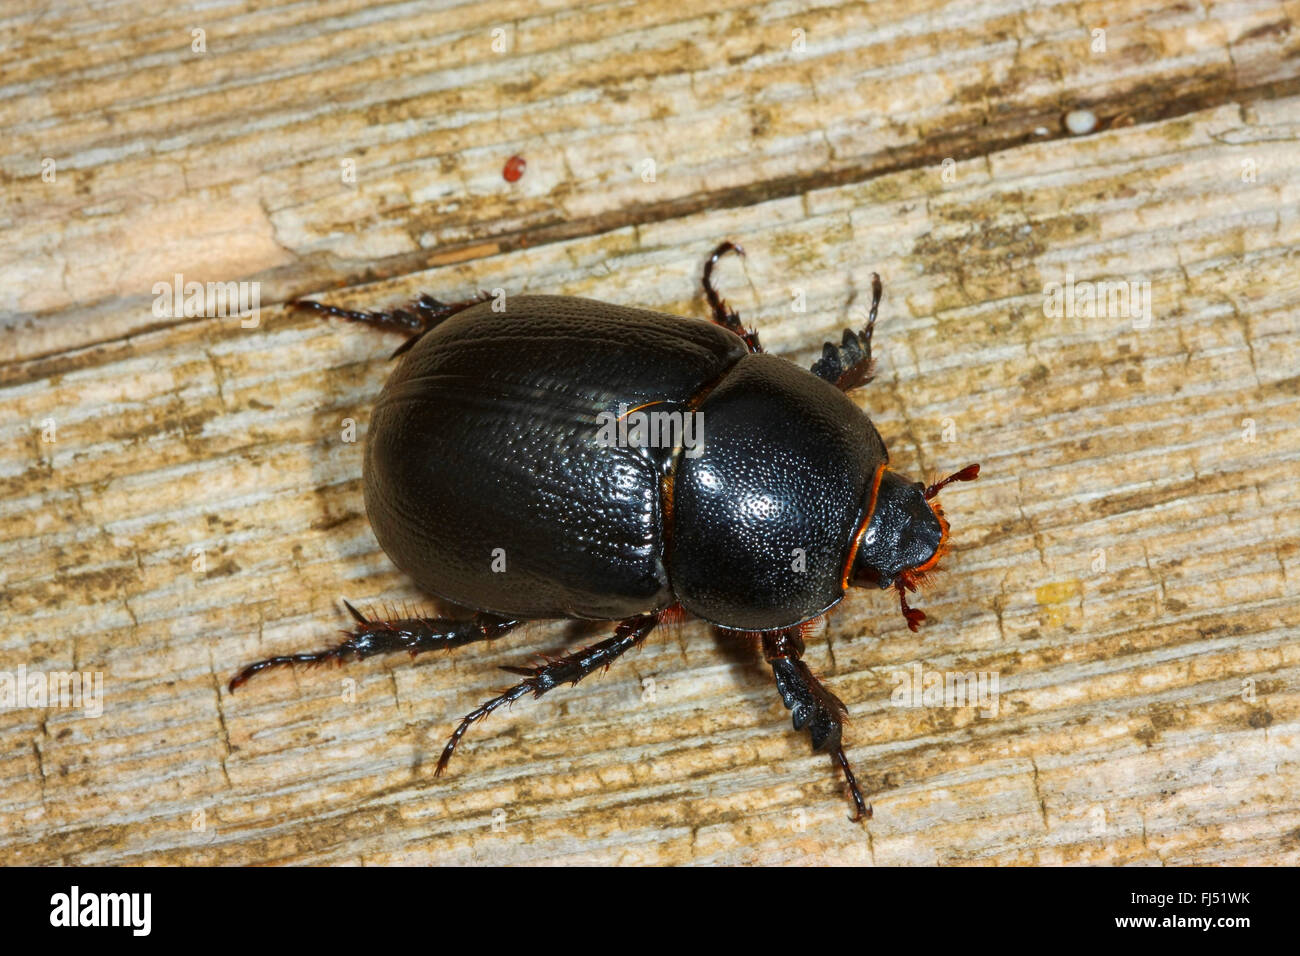 dung beetle (Pentodon idiota), on wood Stock Photo